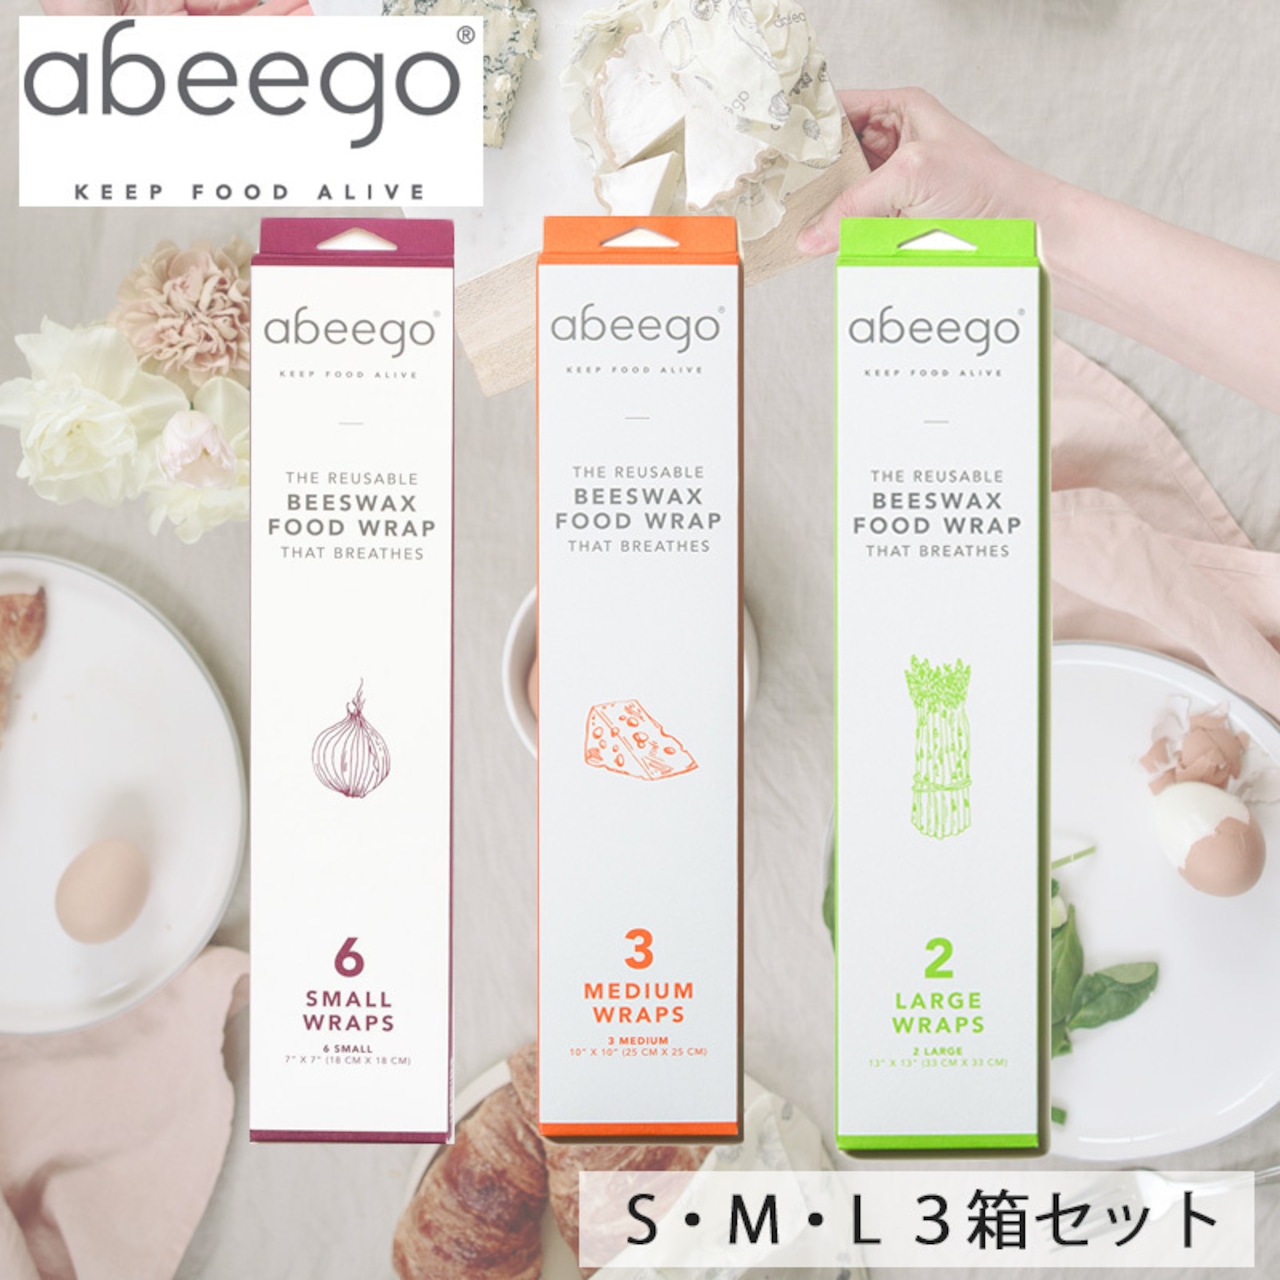 abeego アビーゴ ビーズワックスラップ -スモール 6枚 ミディアム 3枚 ラージ 2枚セット エコ ラップ